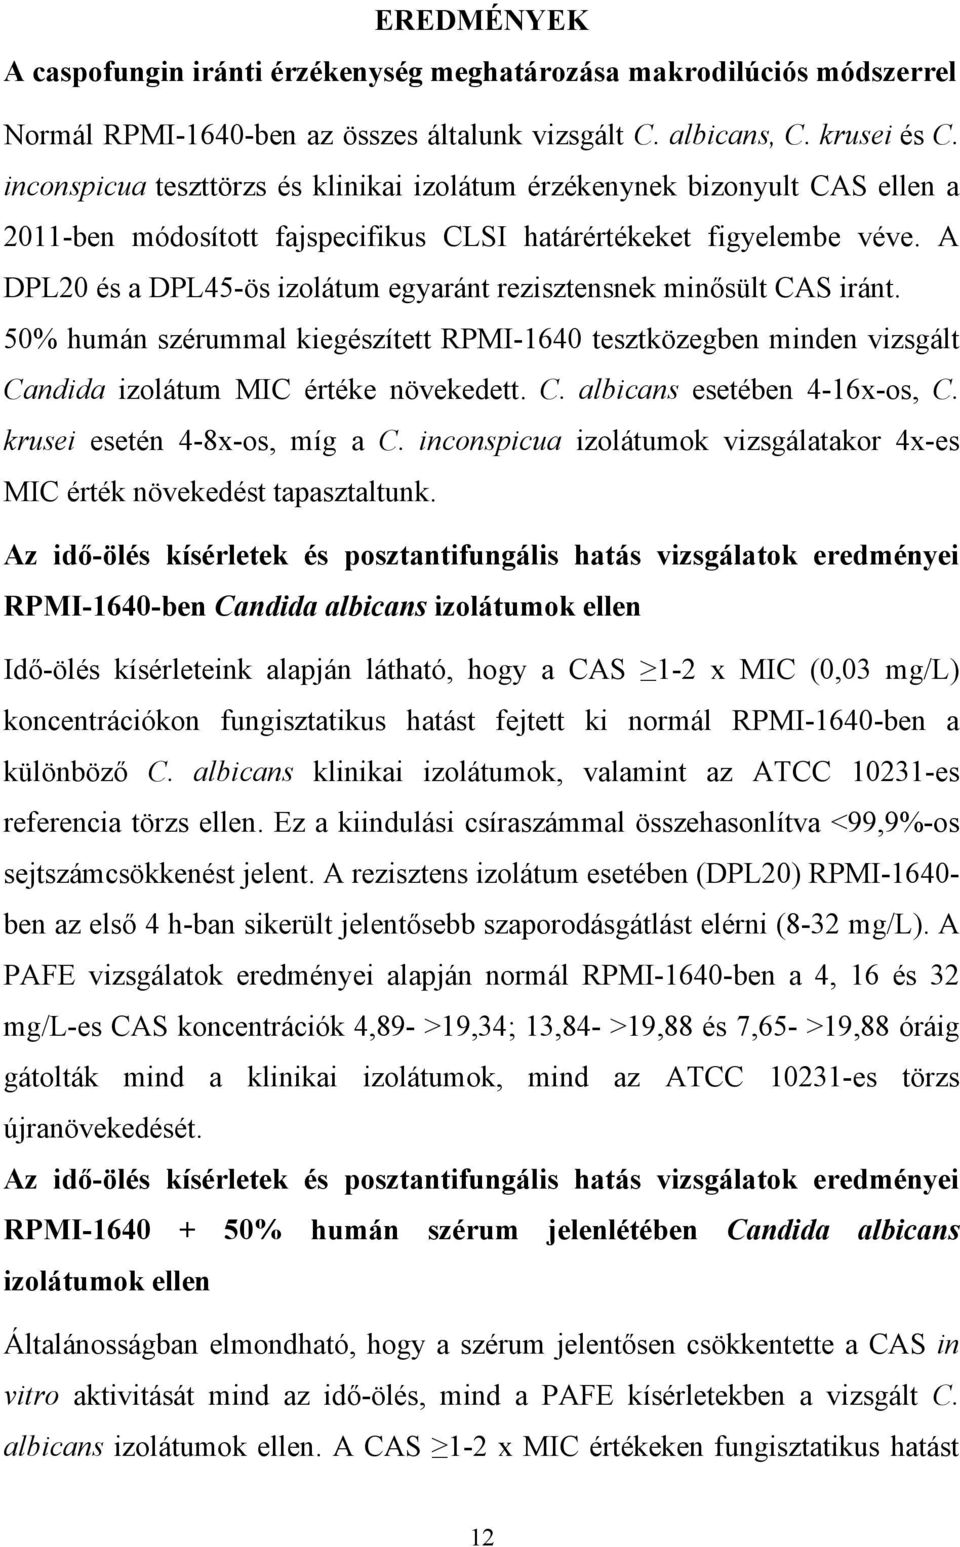 A DPL20 és a DPL45-ös izolátum egyaránt rezisztensnek minősült CAS iránt. 50% humán szérummal kiegészített RPMI-1640 tesztközegben minden vizsgált Candida izolátum MIC értéke növekedett. C. albicans esetében 4-16x-os, C.